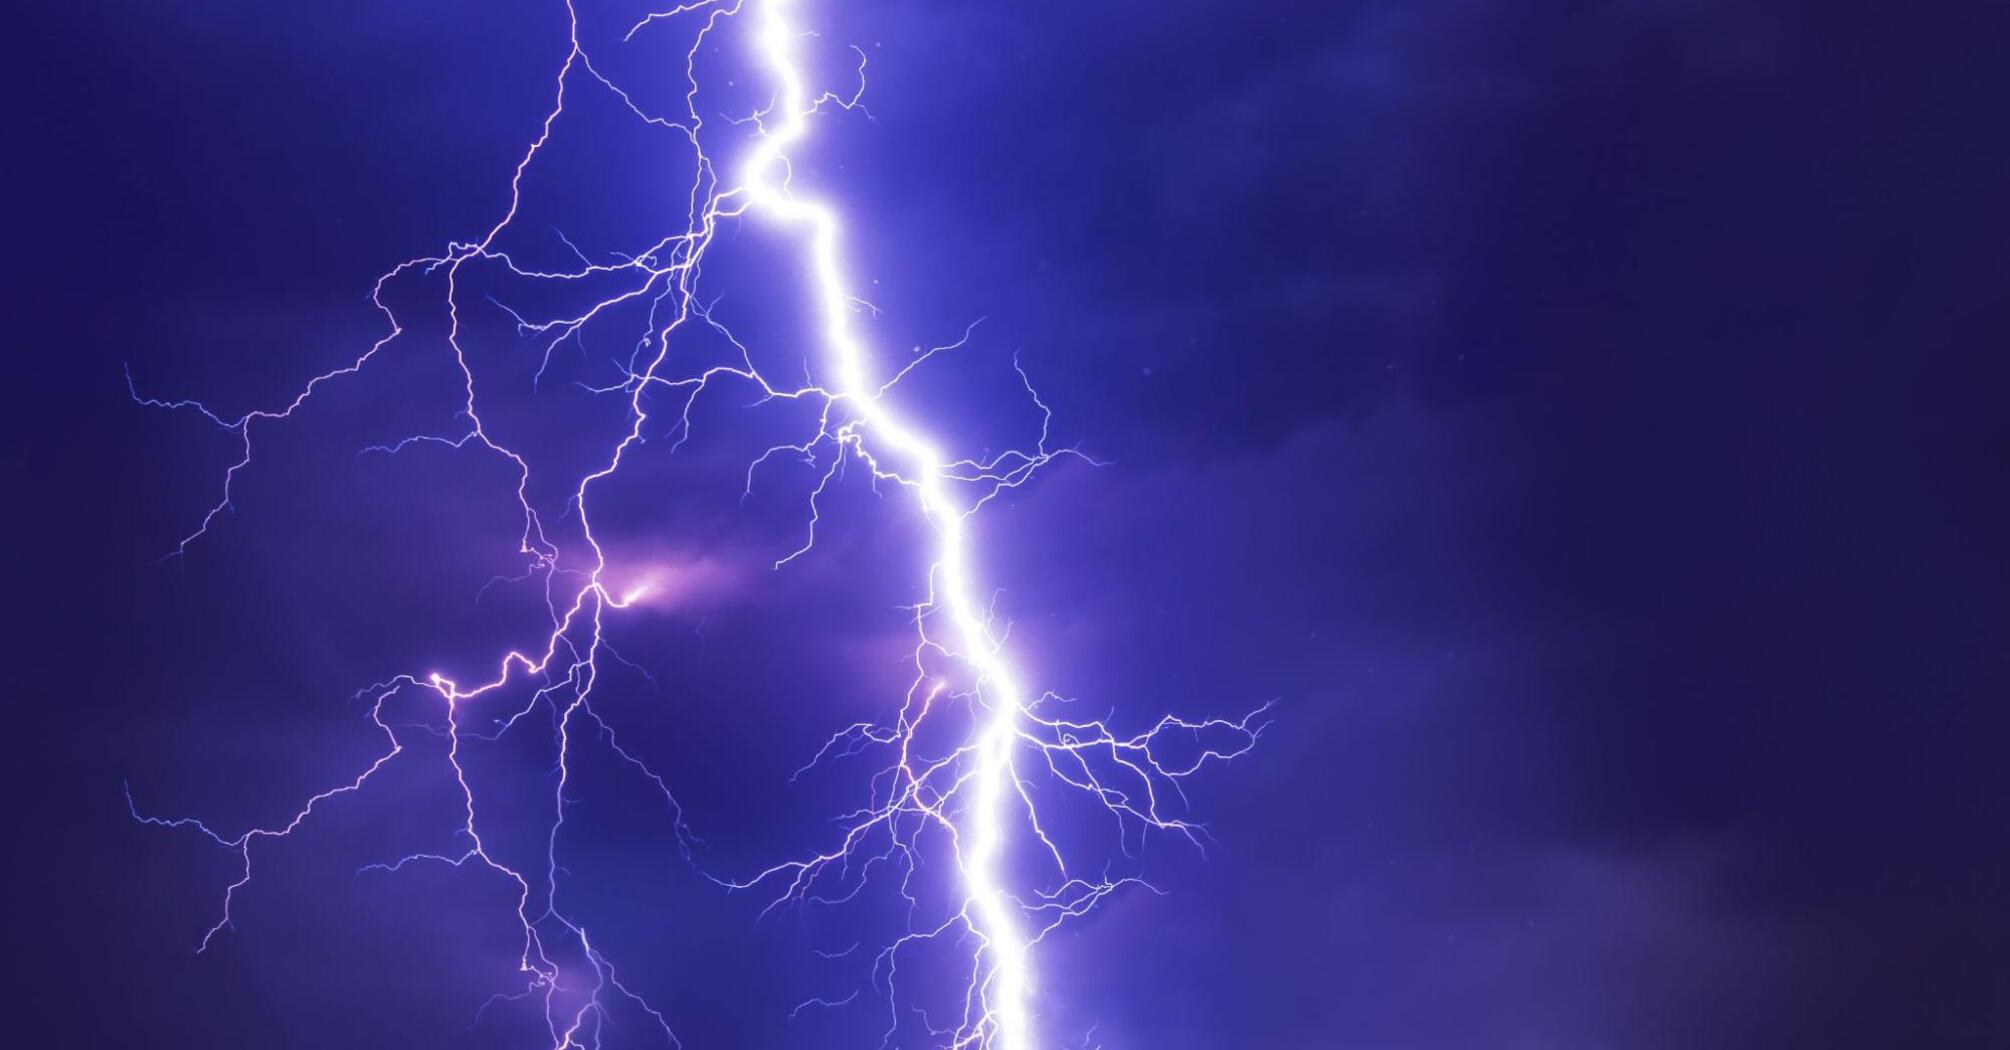 Thunderstorm: Lightning in the sky